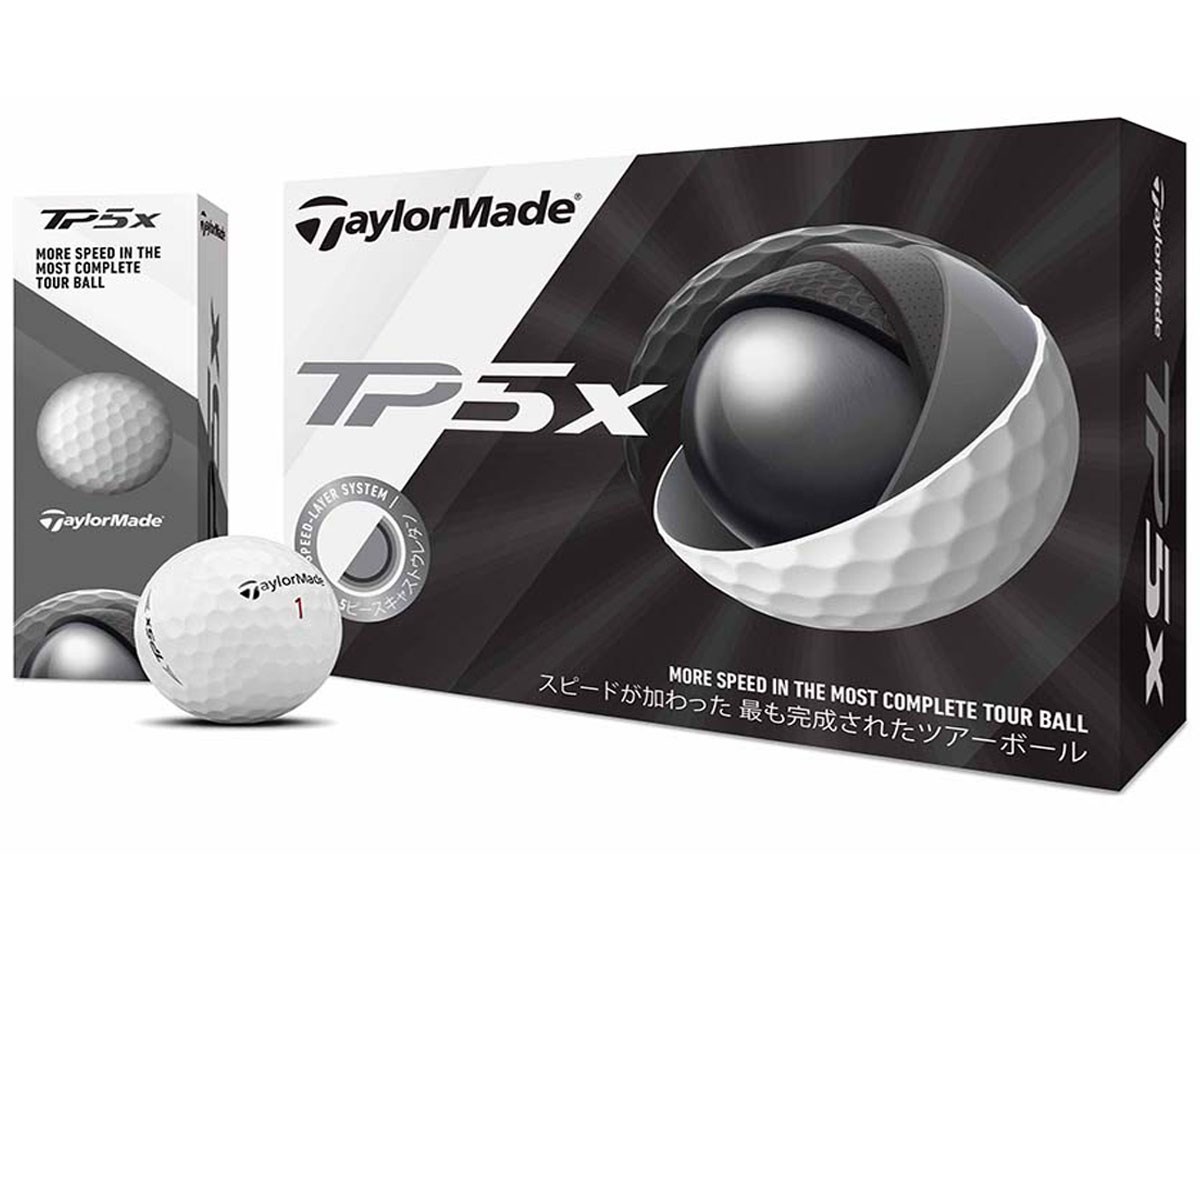 テーラーメイド(Taylor Made) TP5x ボール 